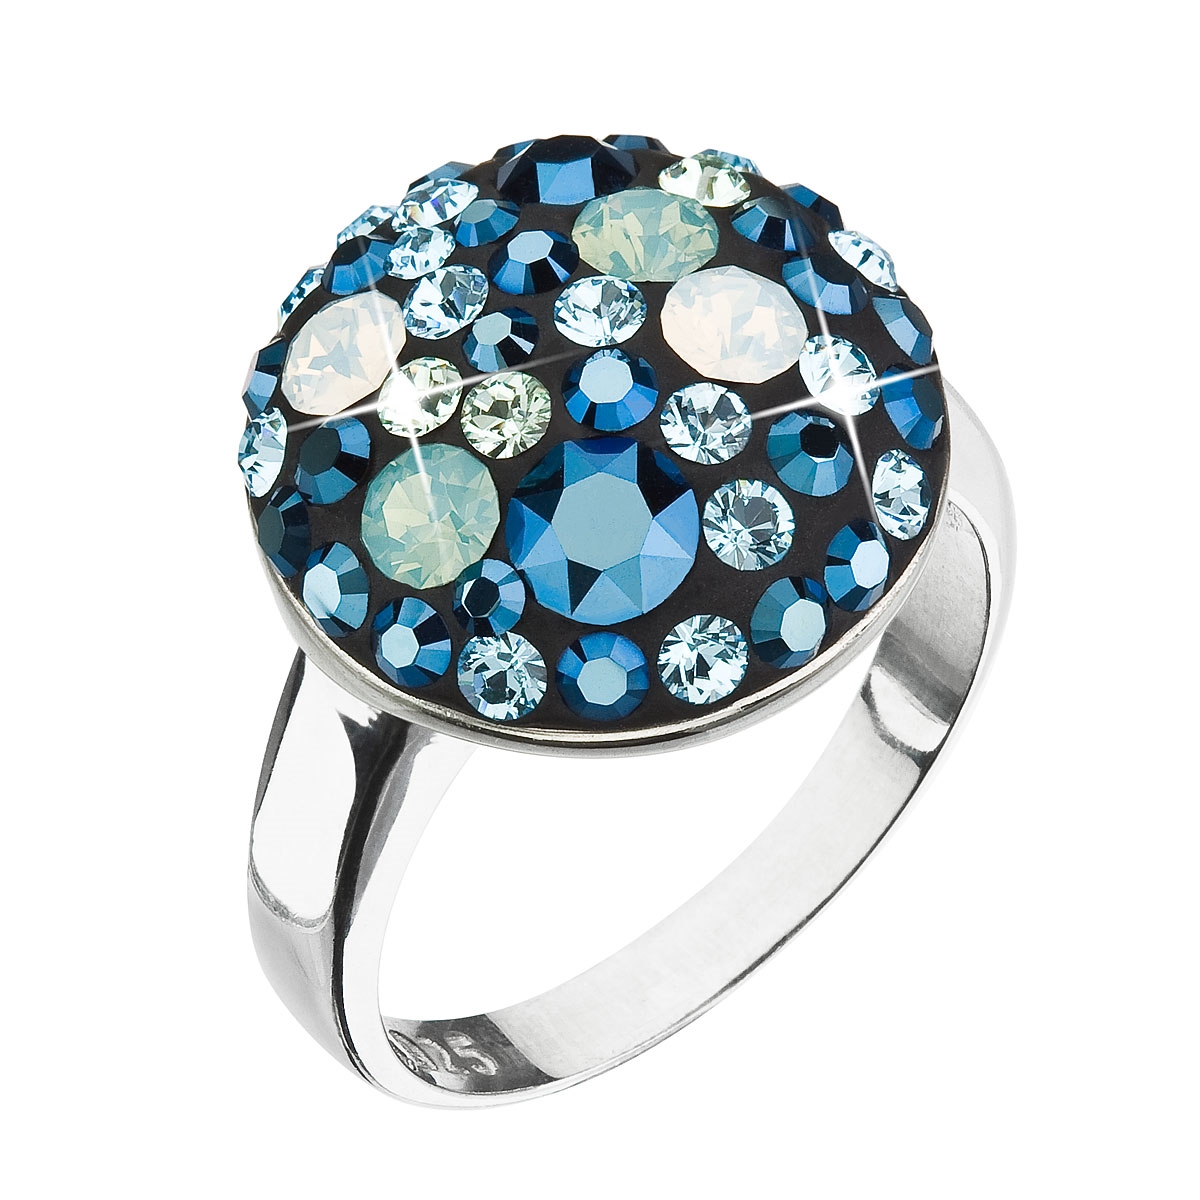 Strieborný prsteň s kryštálmi Swarovski modrý